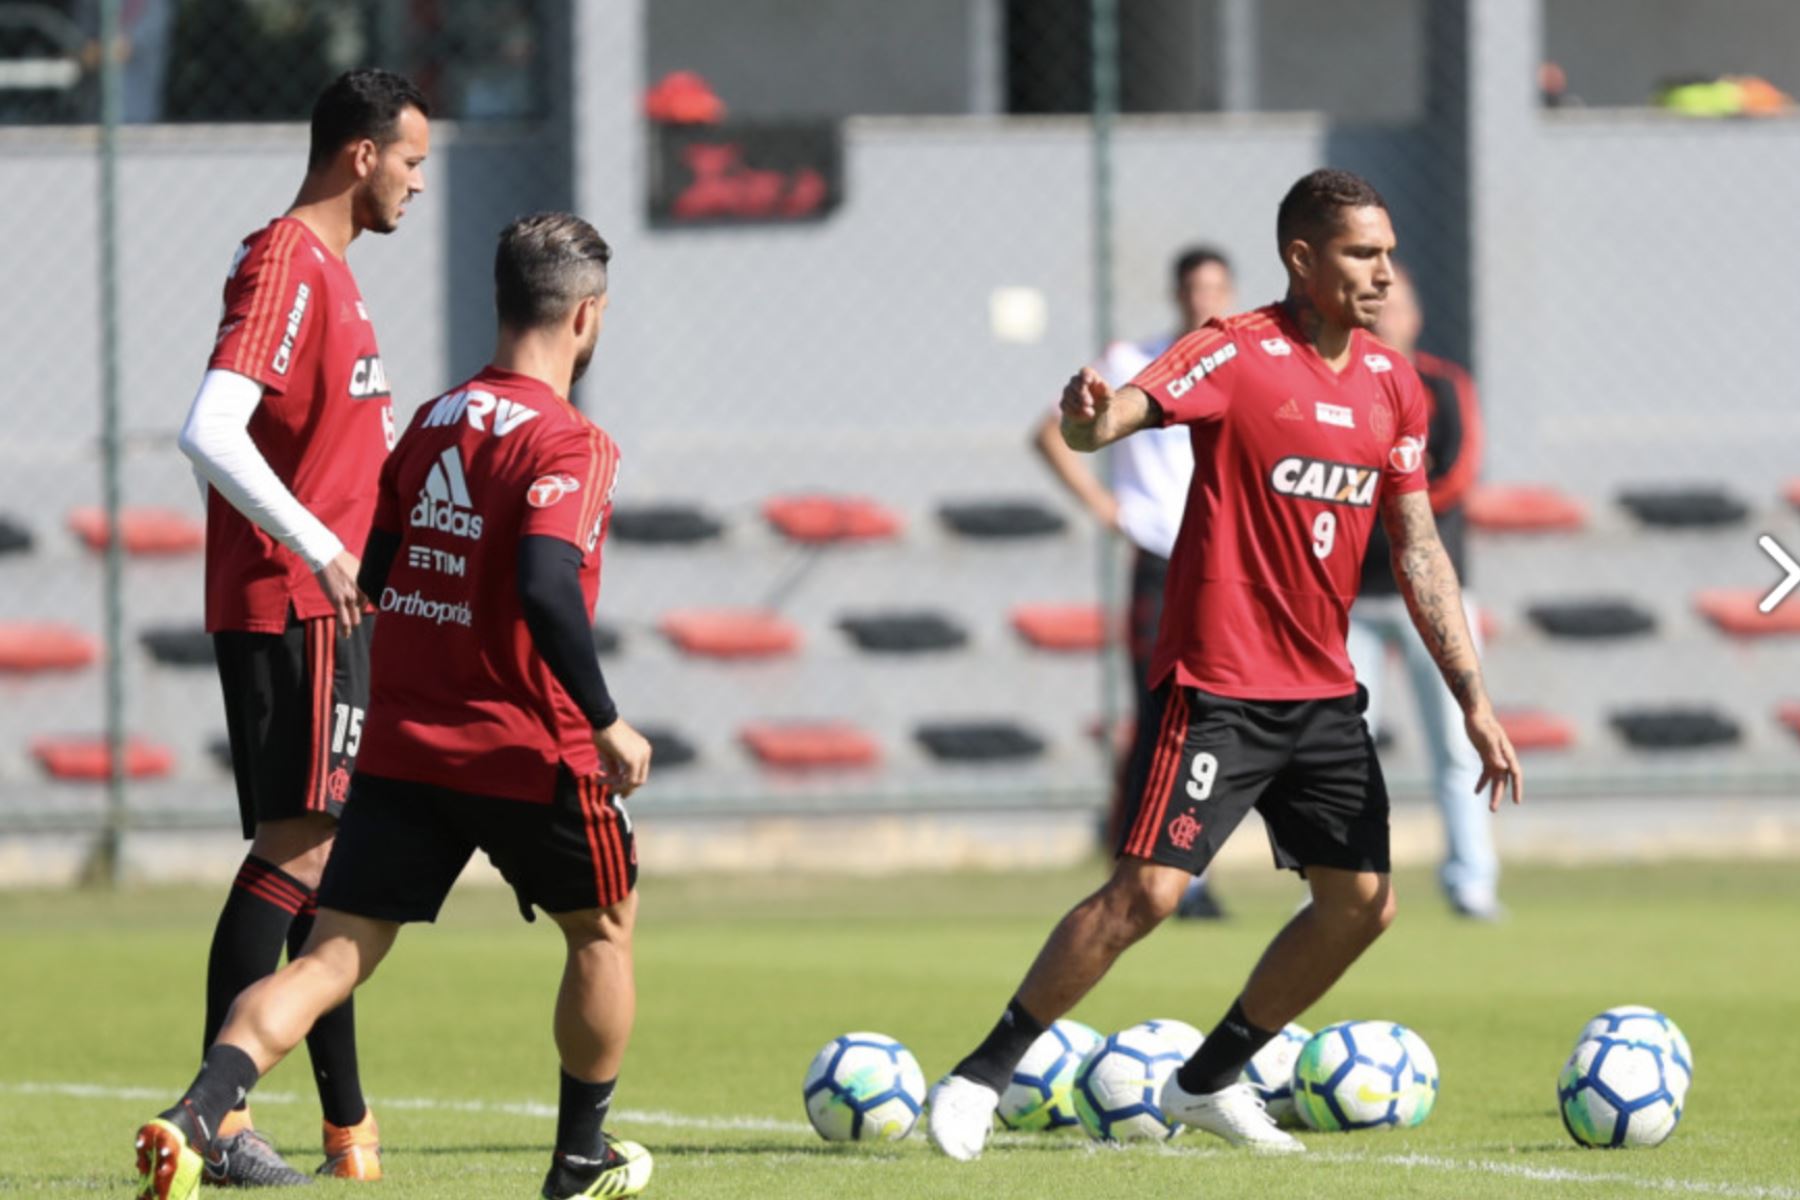 El delantero peruano Paolo Guerrero puede jugar para su club brasileño Flamengo, indicó el Tribunal Federal de Suiza al considerar que "el efecto suspensivo" del recurso interpuesto por el jugador contra su suspensión por un caso de dopaje aún es "válido".Foto: Flamengo